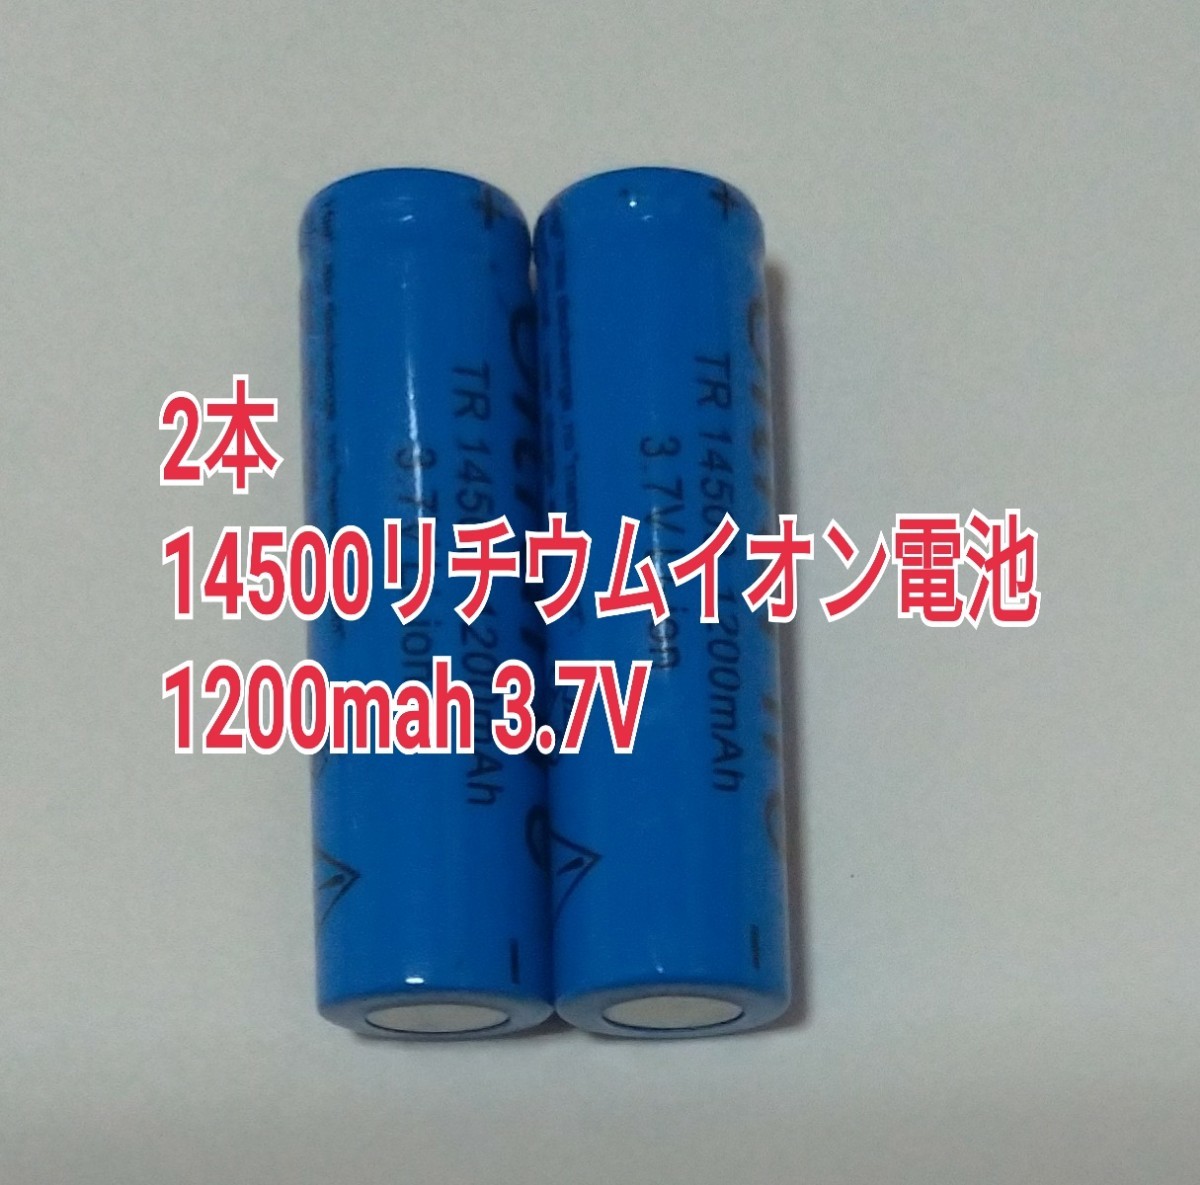  2 шт большая вместимость 14500 lithium ион батарейка 1200mah 3.7V